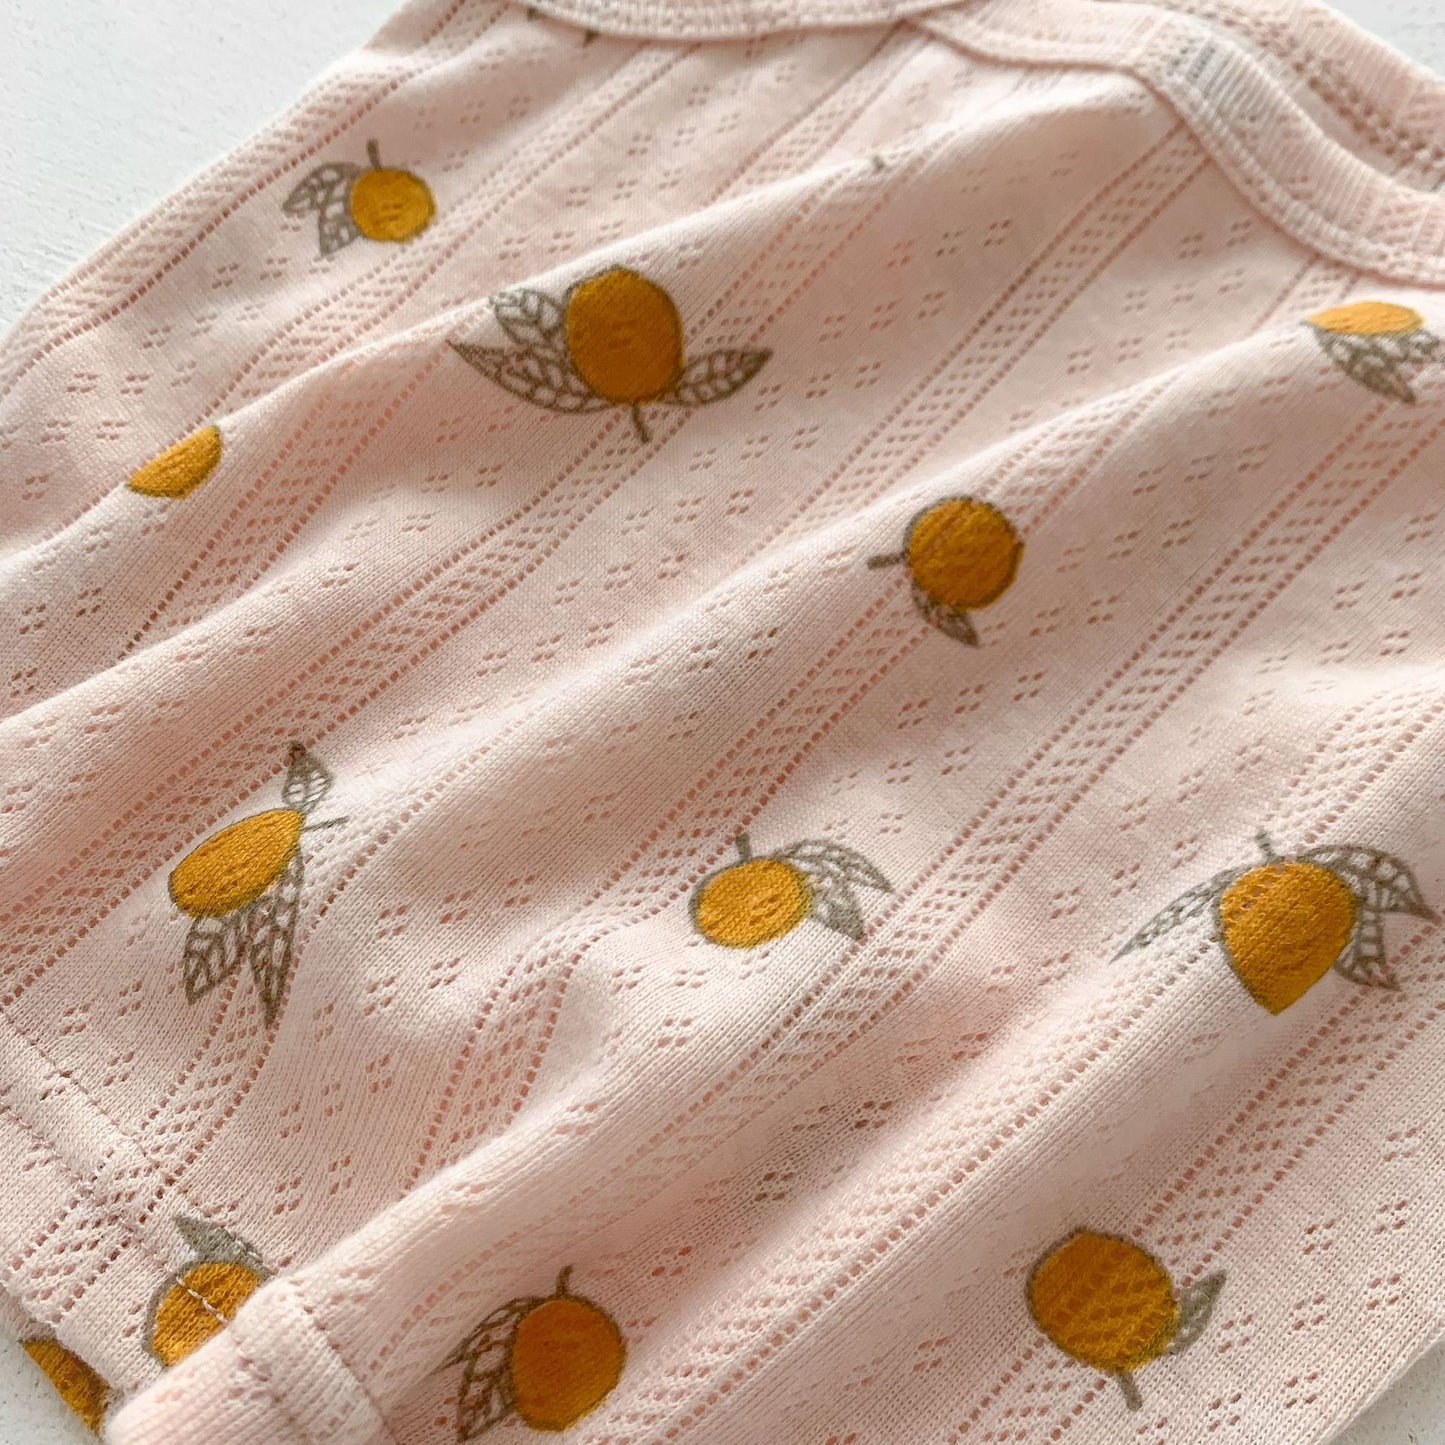 BABY Toddler Kids Girls Sleepwear Pajamas 2pcs Set